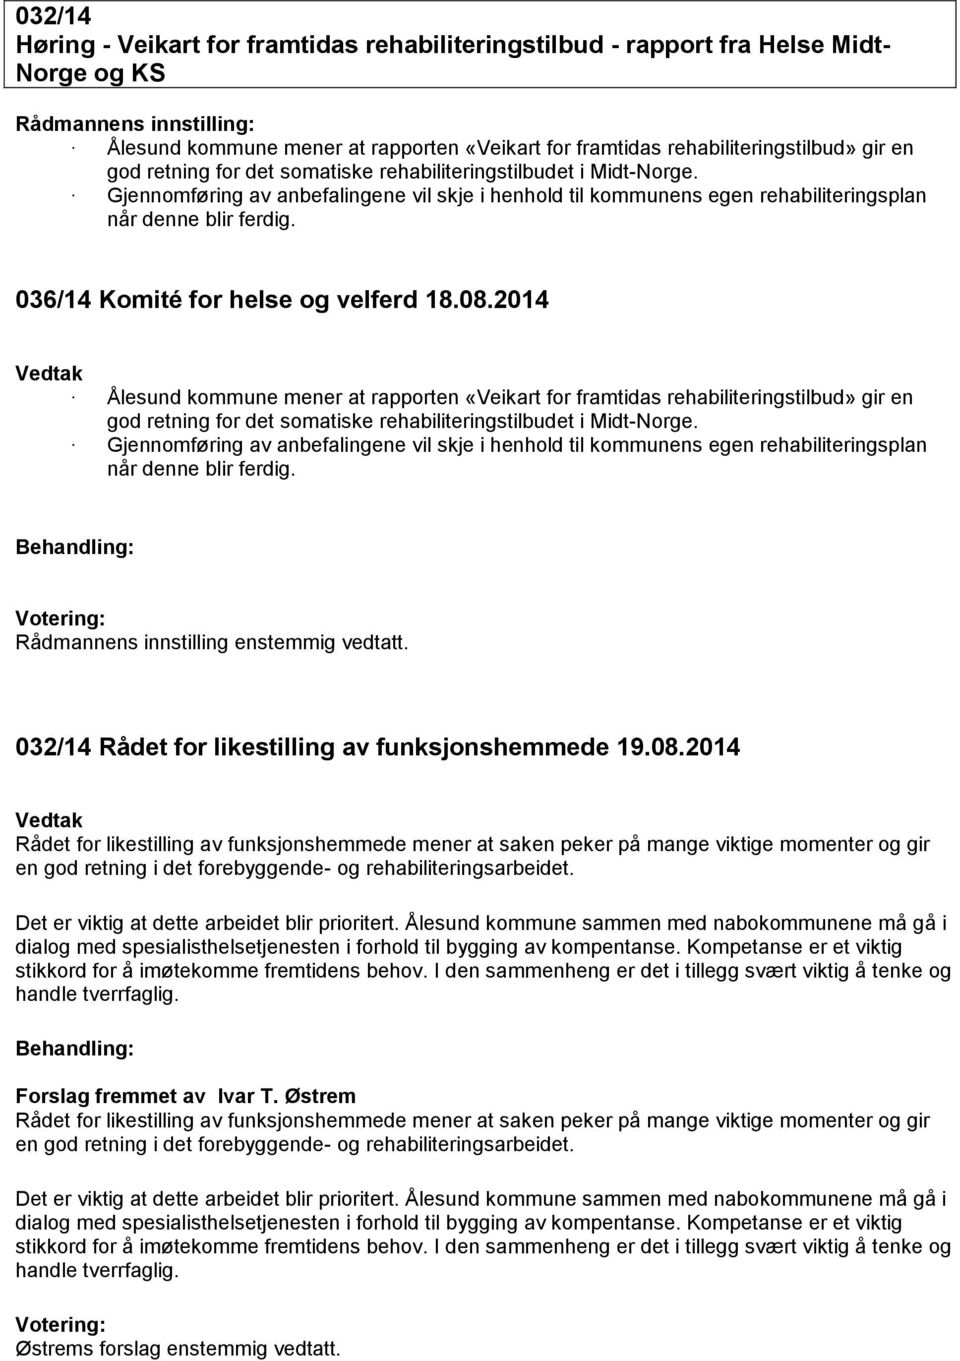 036/14 Komité for helse og velferd 18.08.2014 Ålesund kommune mener at rapporten «Veikart for framtidas rehabiliteringstilbud» gir en god retning  Rådmannens innstilling enstemmig vedtatt.